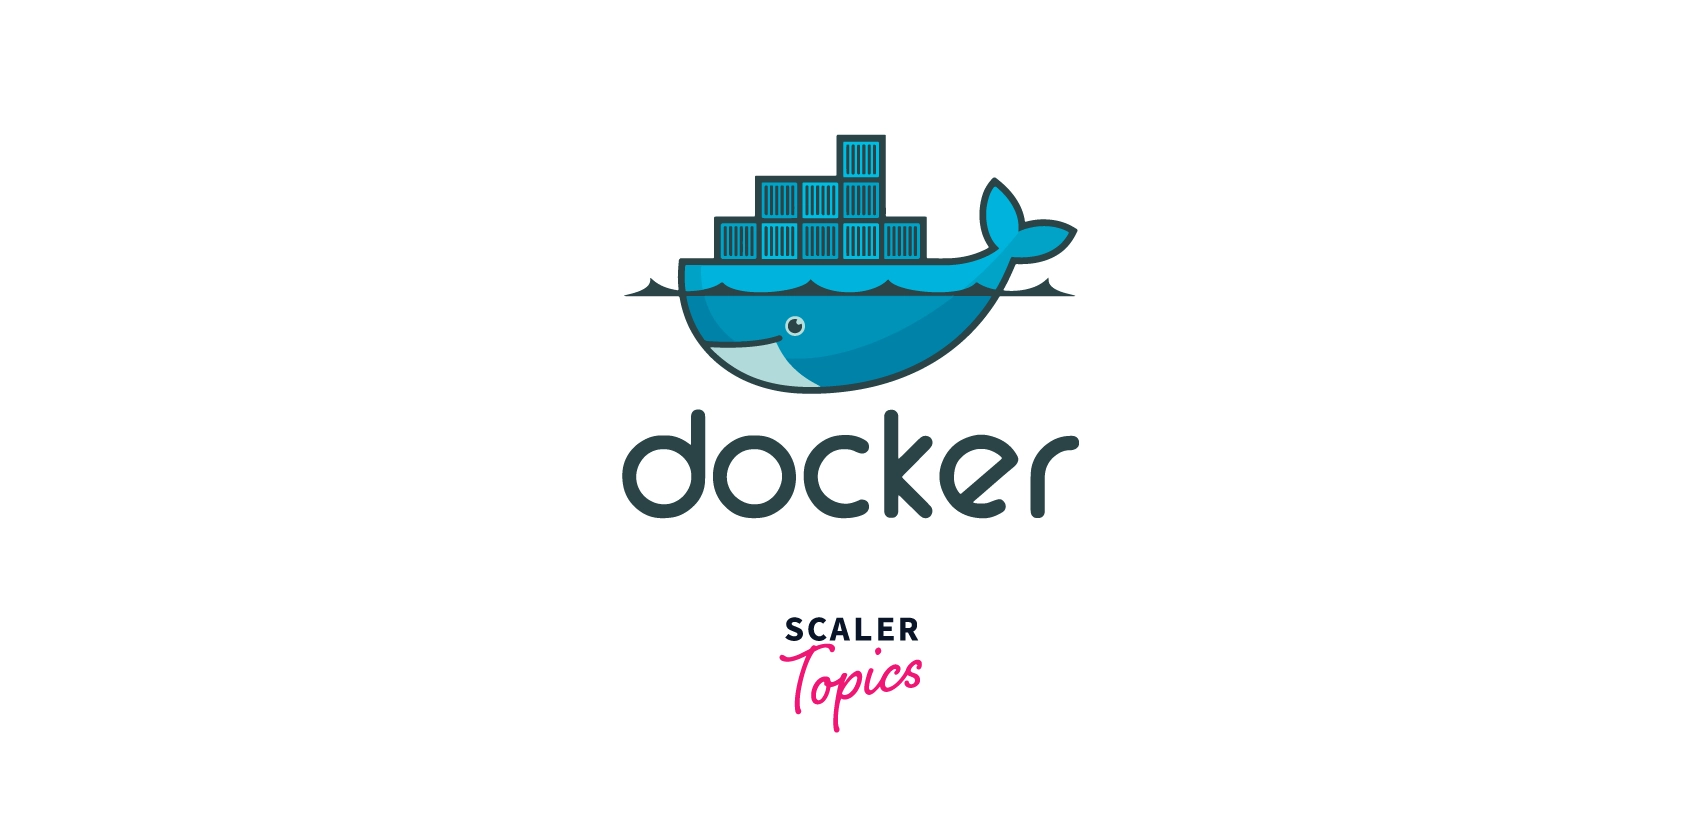 Docker Definition